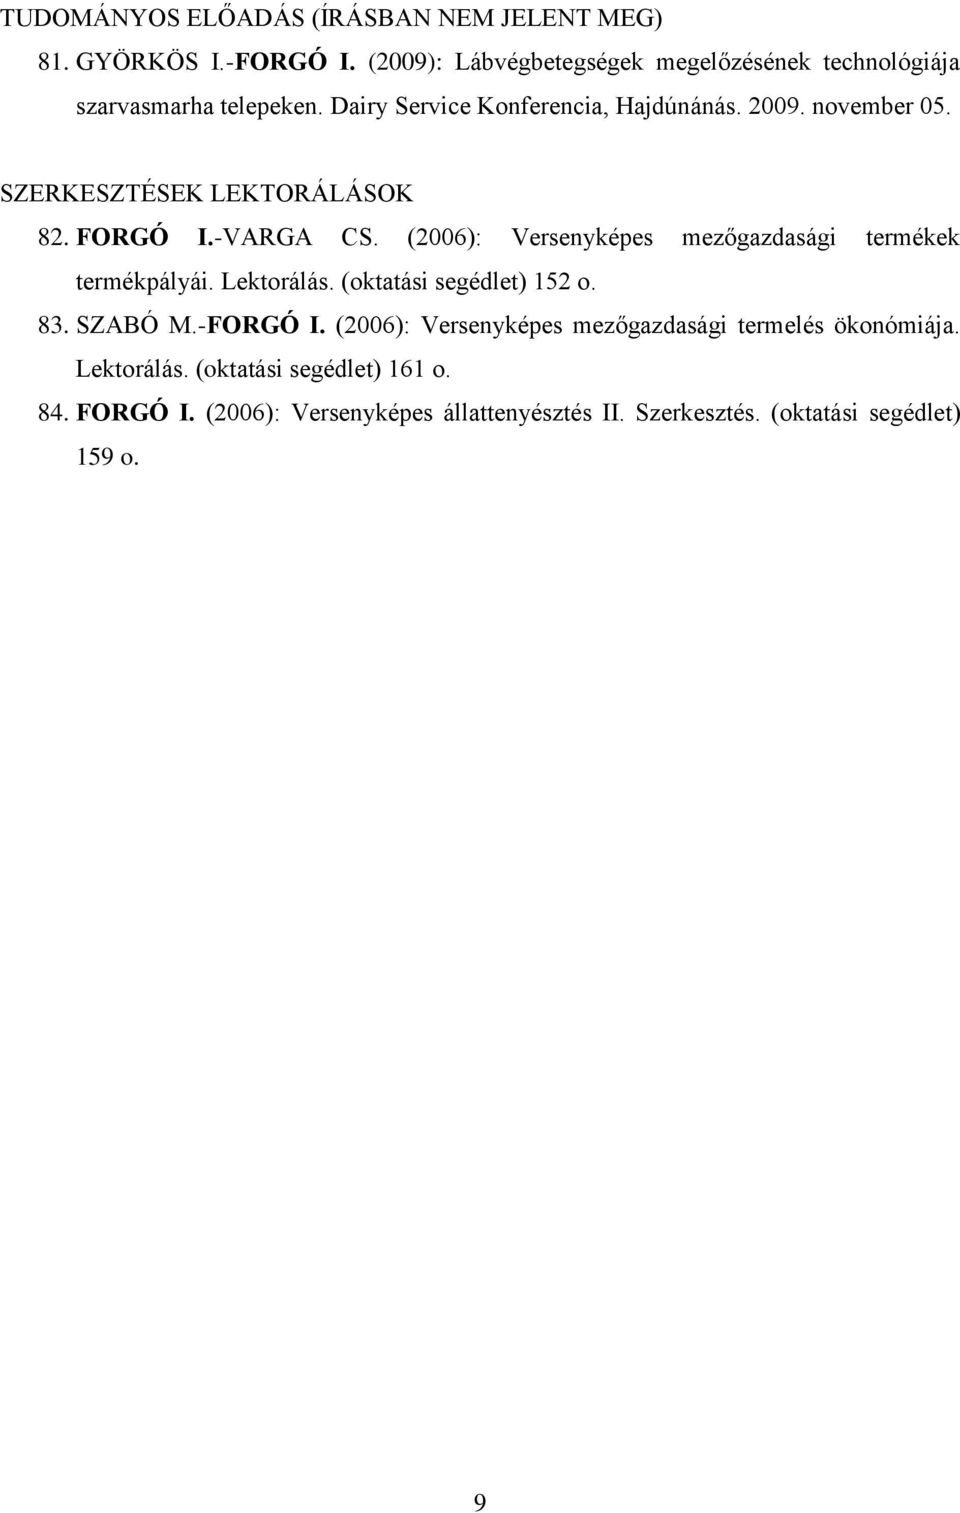 SZERKESZTÉSEK LEKTORÁLÁSOK 82. FORGÓ I.-VARGA CS. (2006): Versenyképes mezőgazdasági termékek termékpályái. Lektorálás.